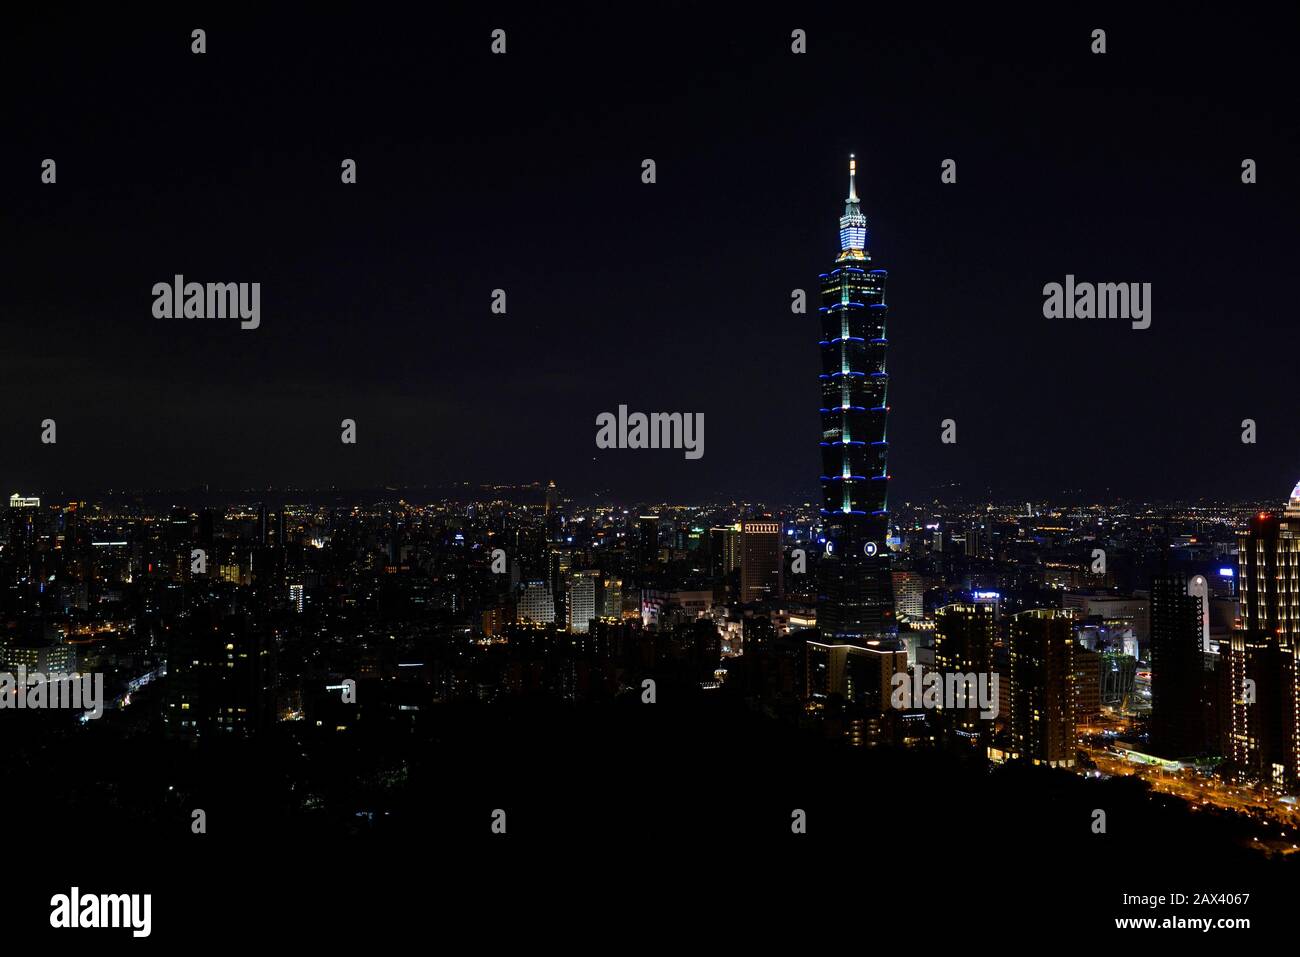 Gratte-ciel Taipei 101 et ses environs vu la nuit d'une colline voisine. Taipei, Taïwan Banque D'Images